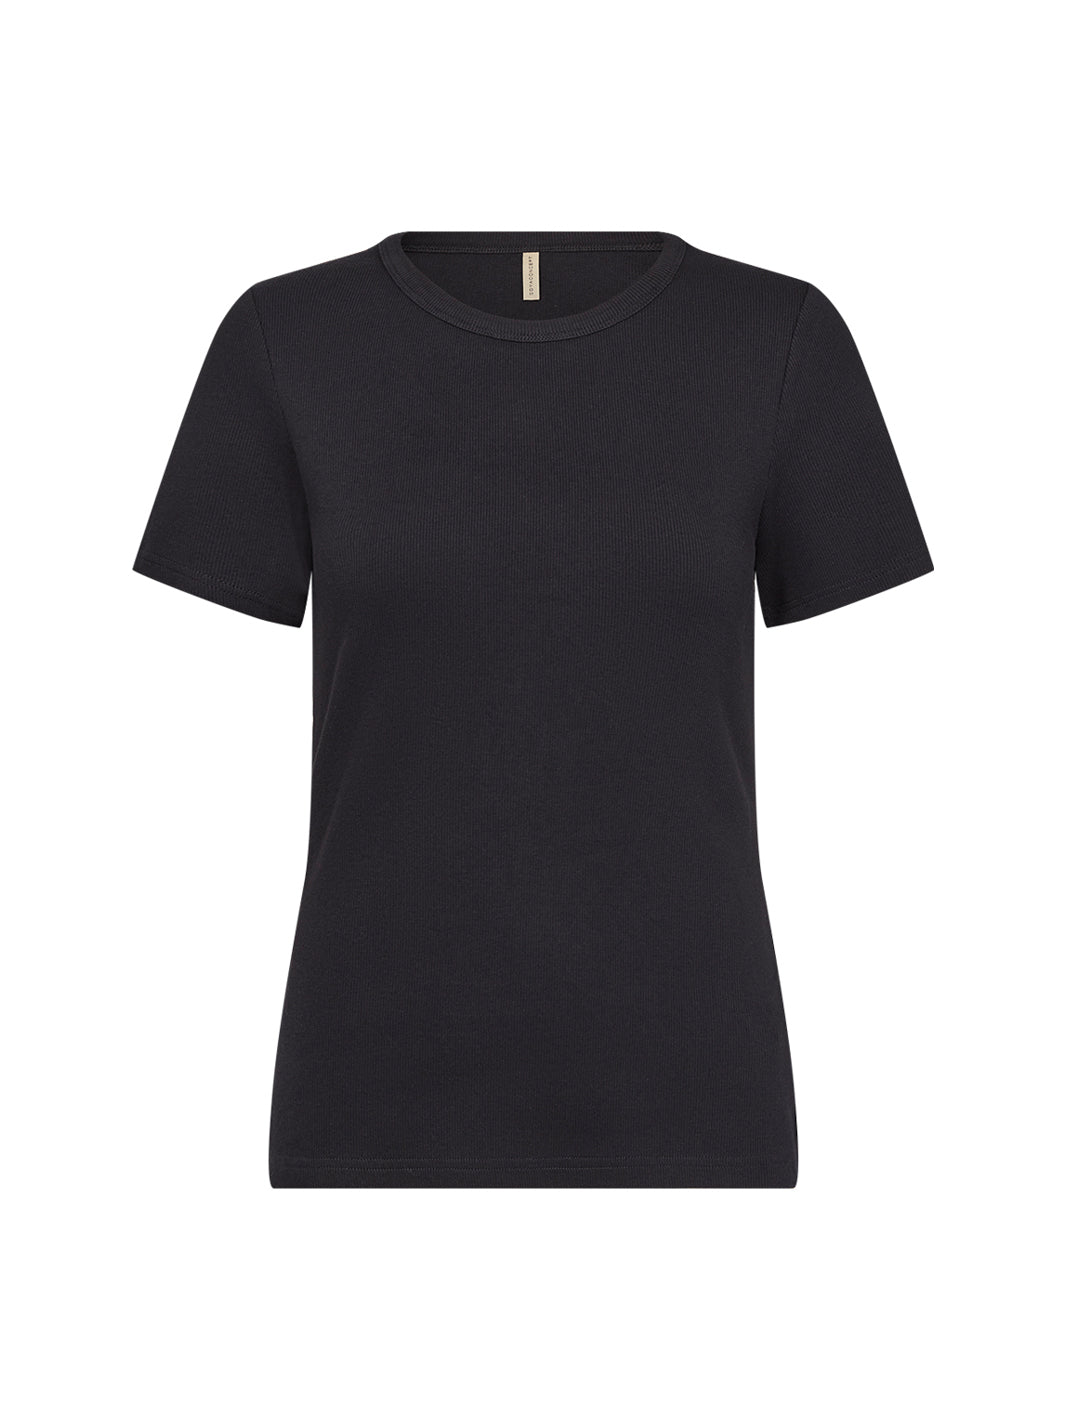 Soya Concept Mignon 3 t-shirt black - Online-Mode